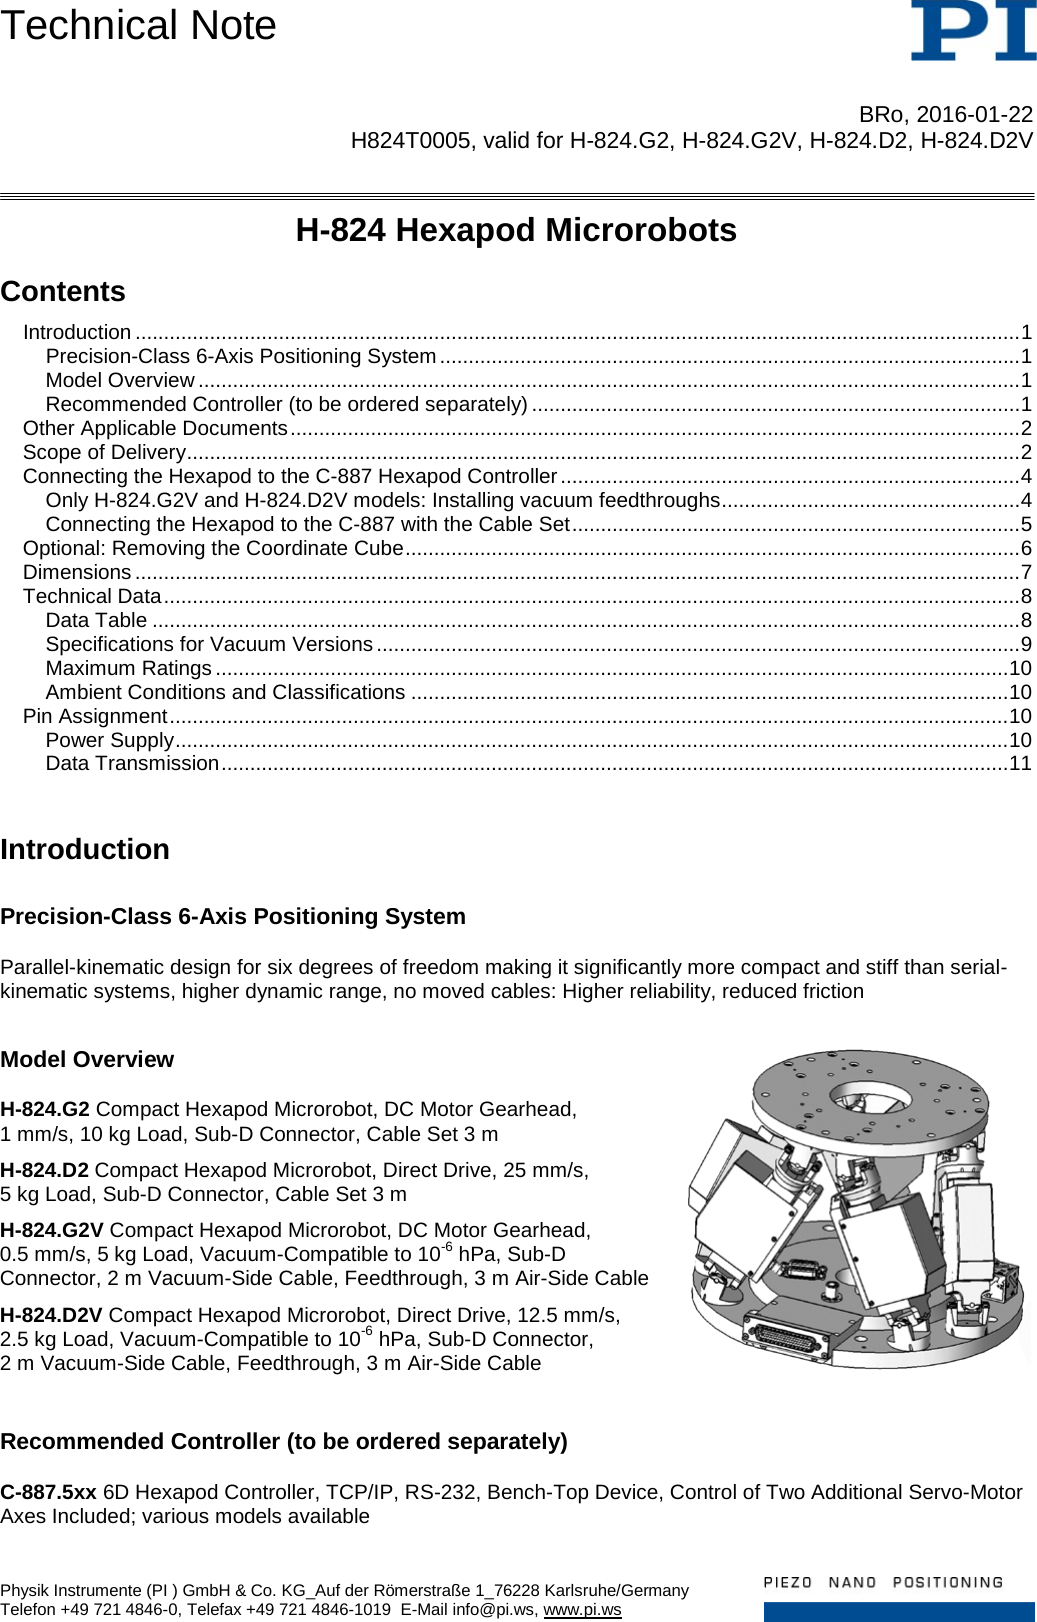 Page 1 of 12 - Physik Instrumente .  H824T0005 TN H-824 D2 G2 D2V G2V